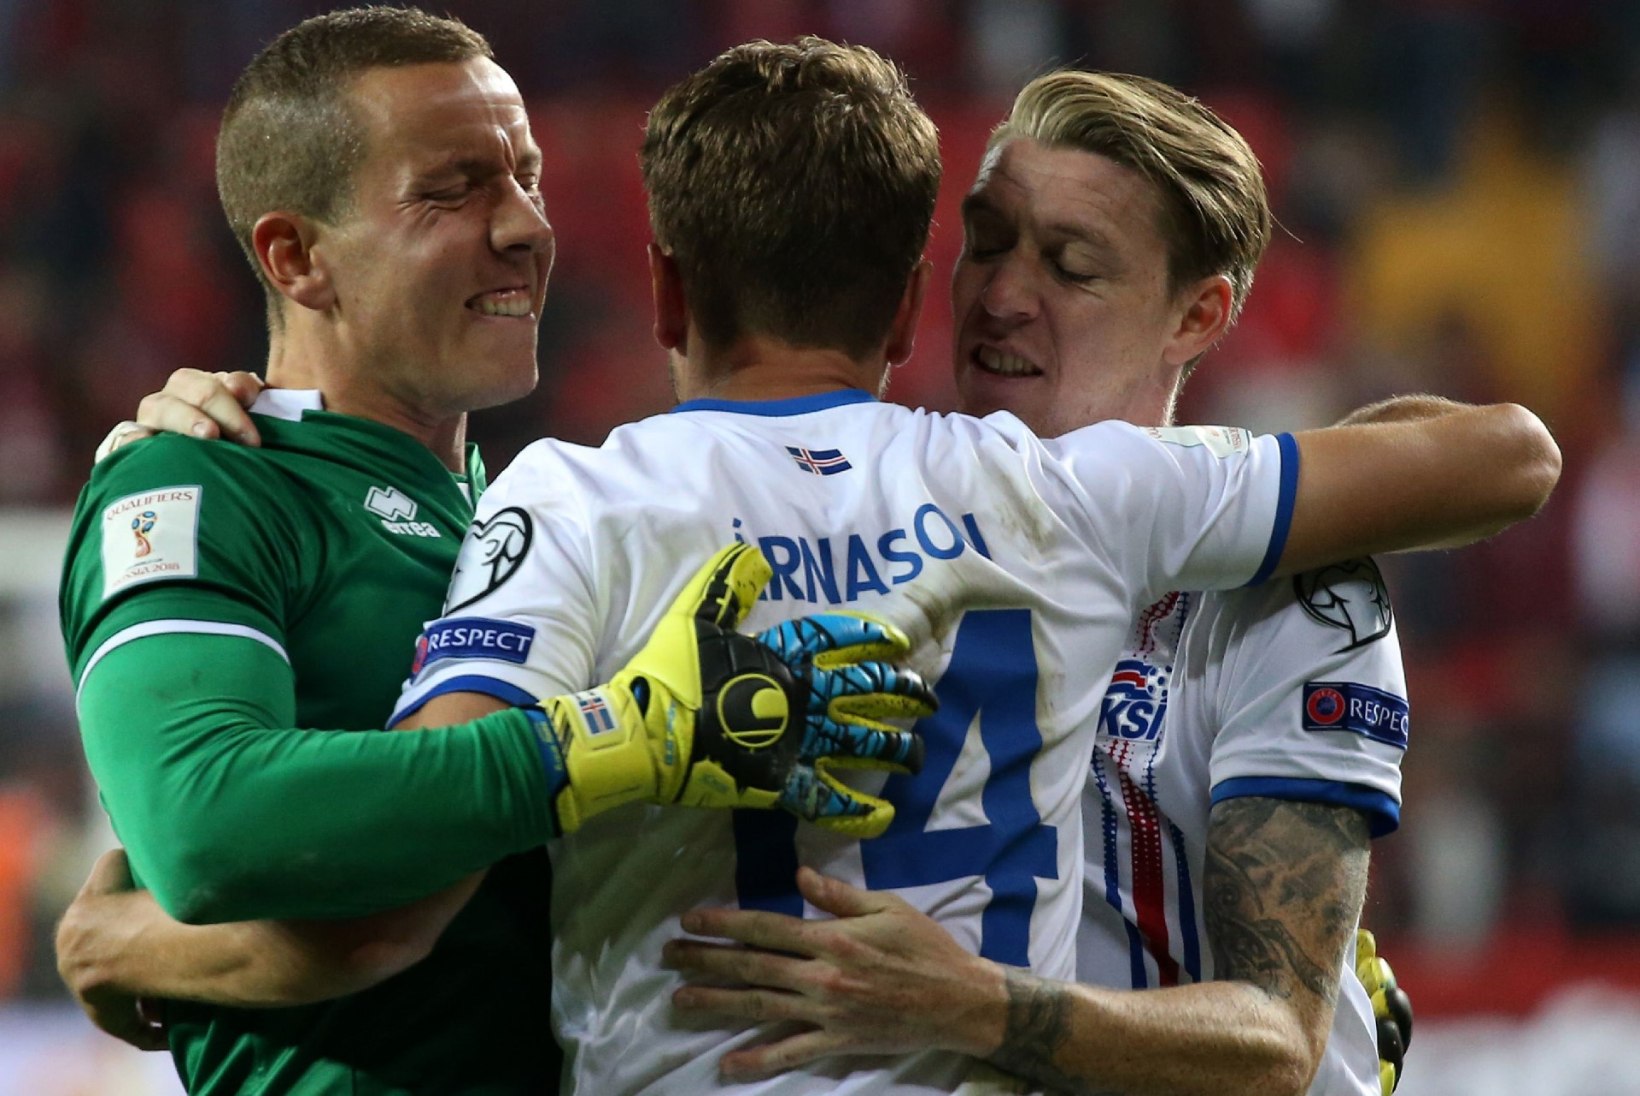 NII SEE JUHTUS | Sport 09.10: Islandi jalgpallikoondis tegigi seda!